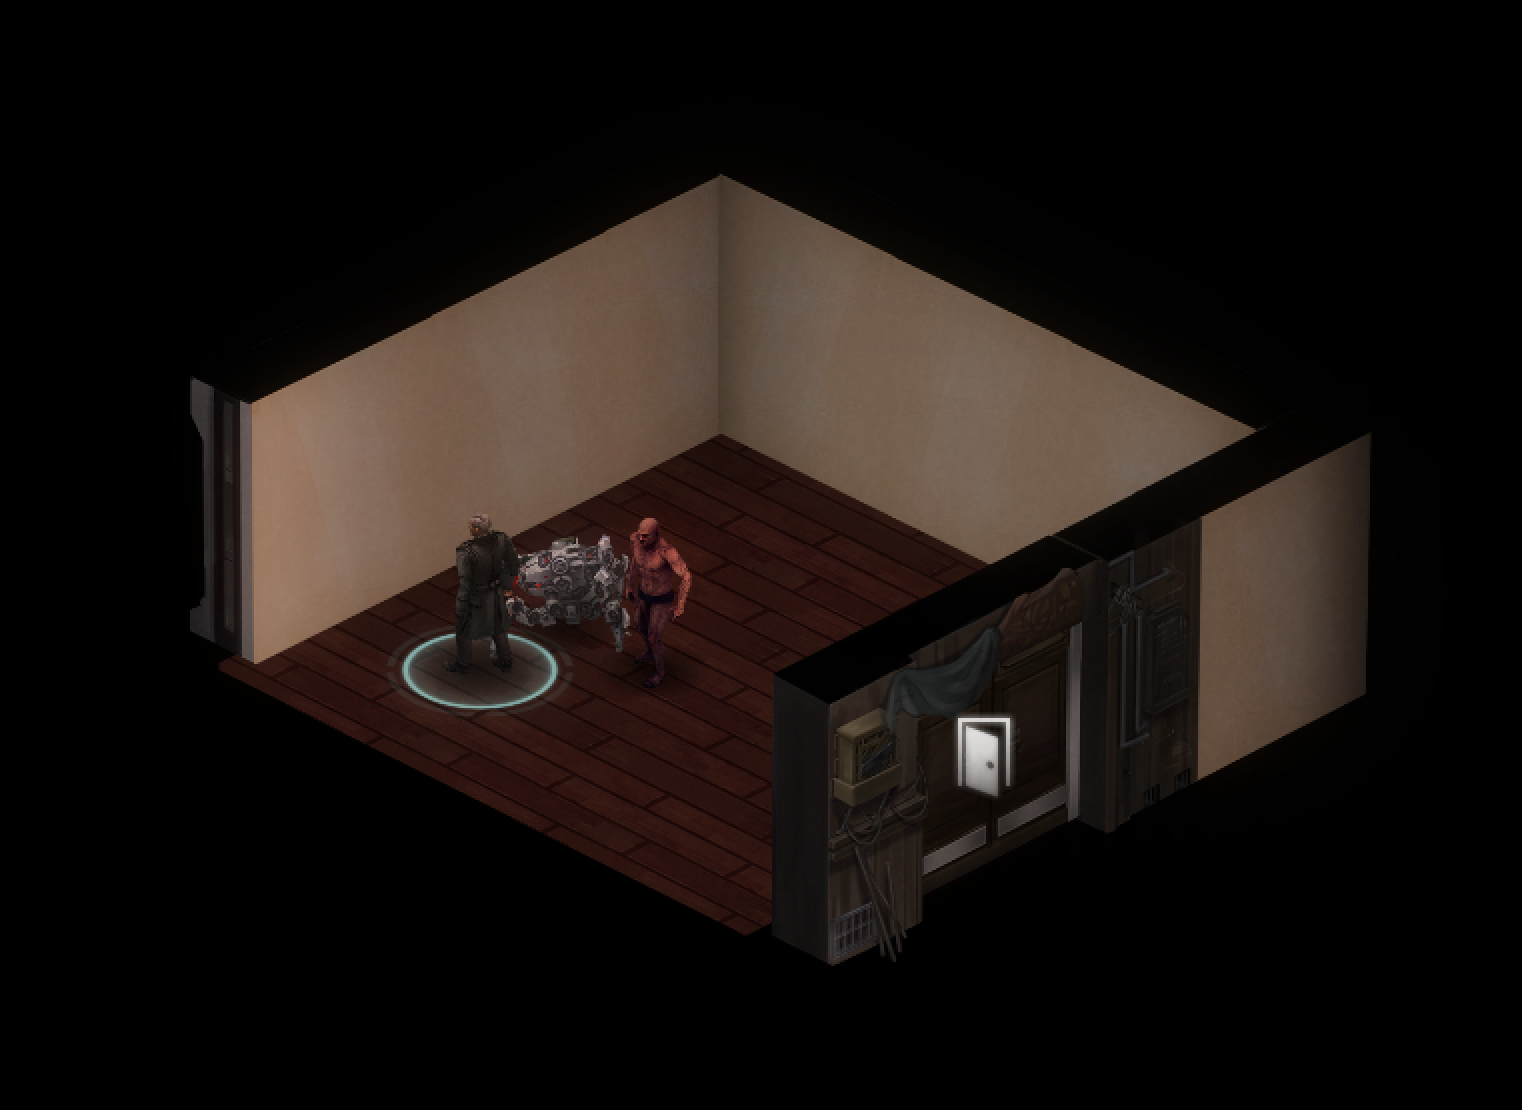 Screenshot of the door interaction in-game